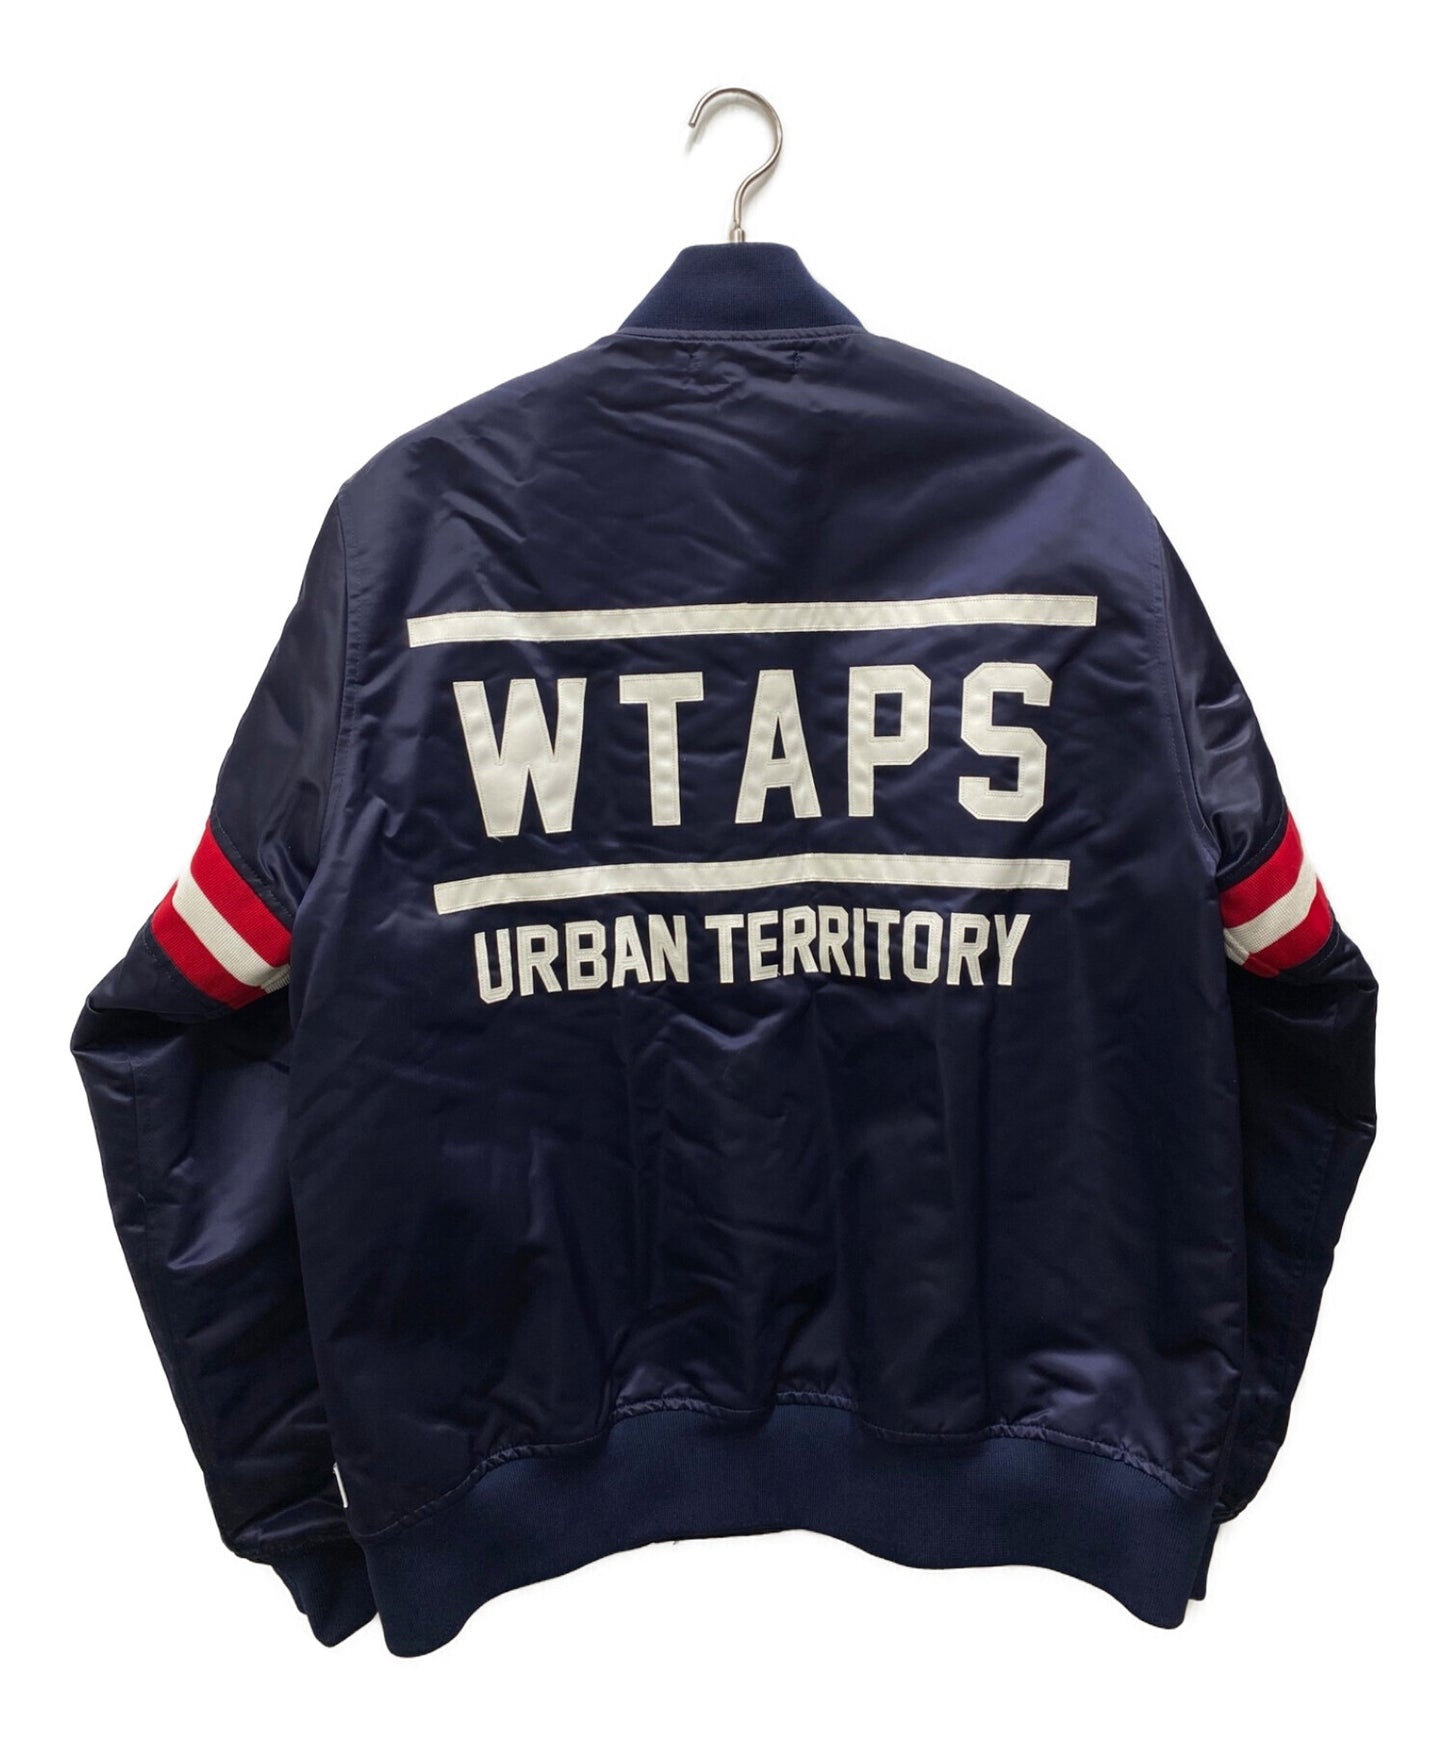 WTAPS jacket with team's logo 182TQDT-JKM02